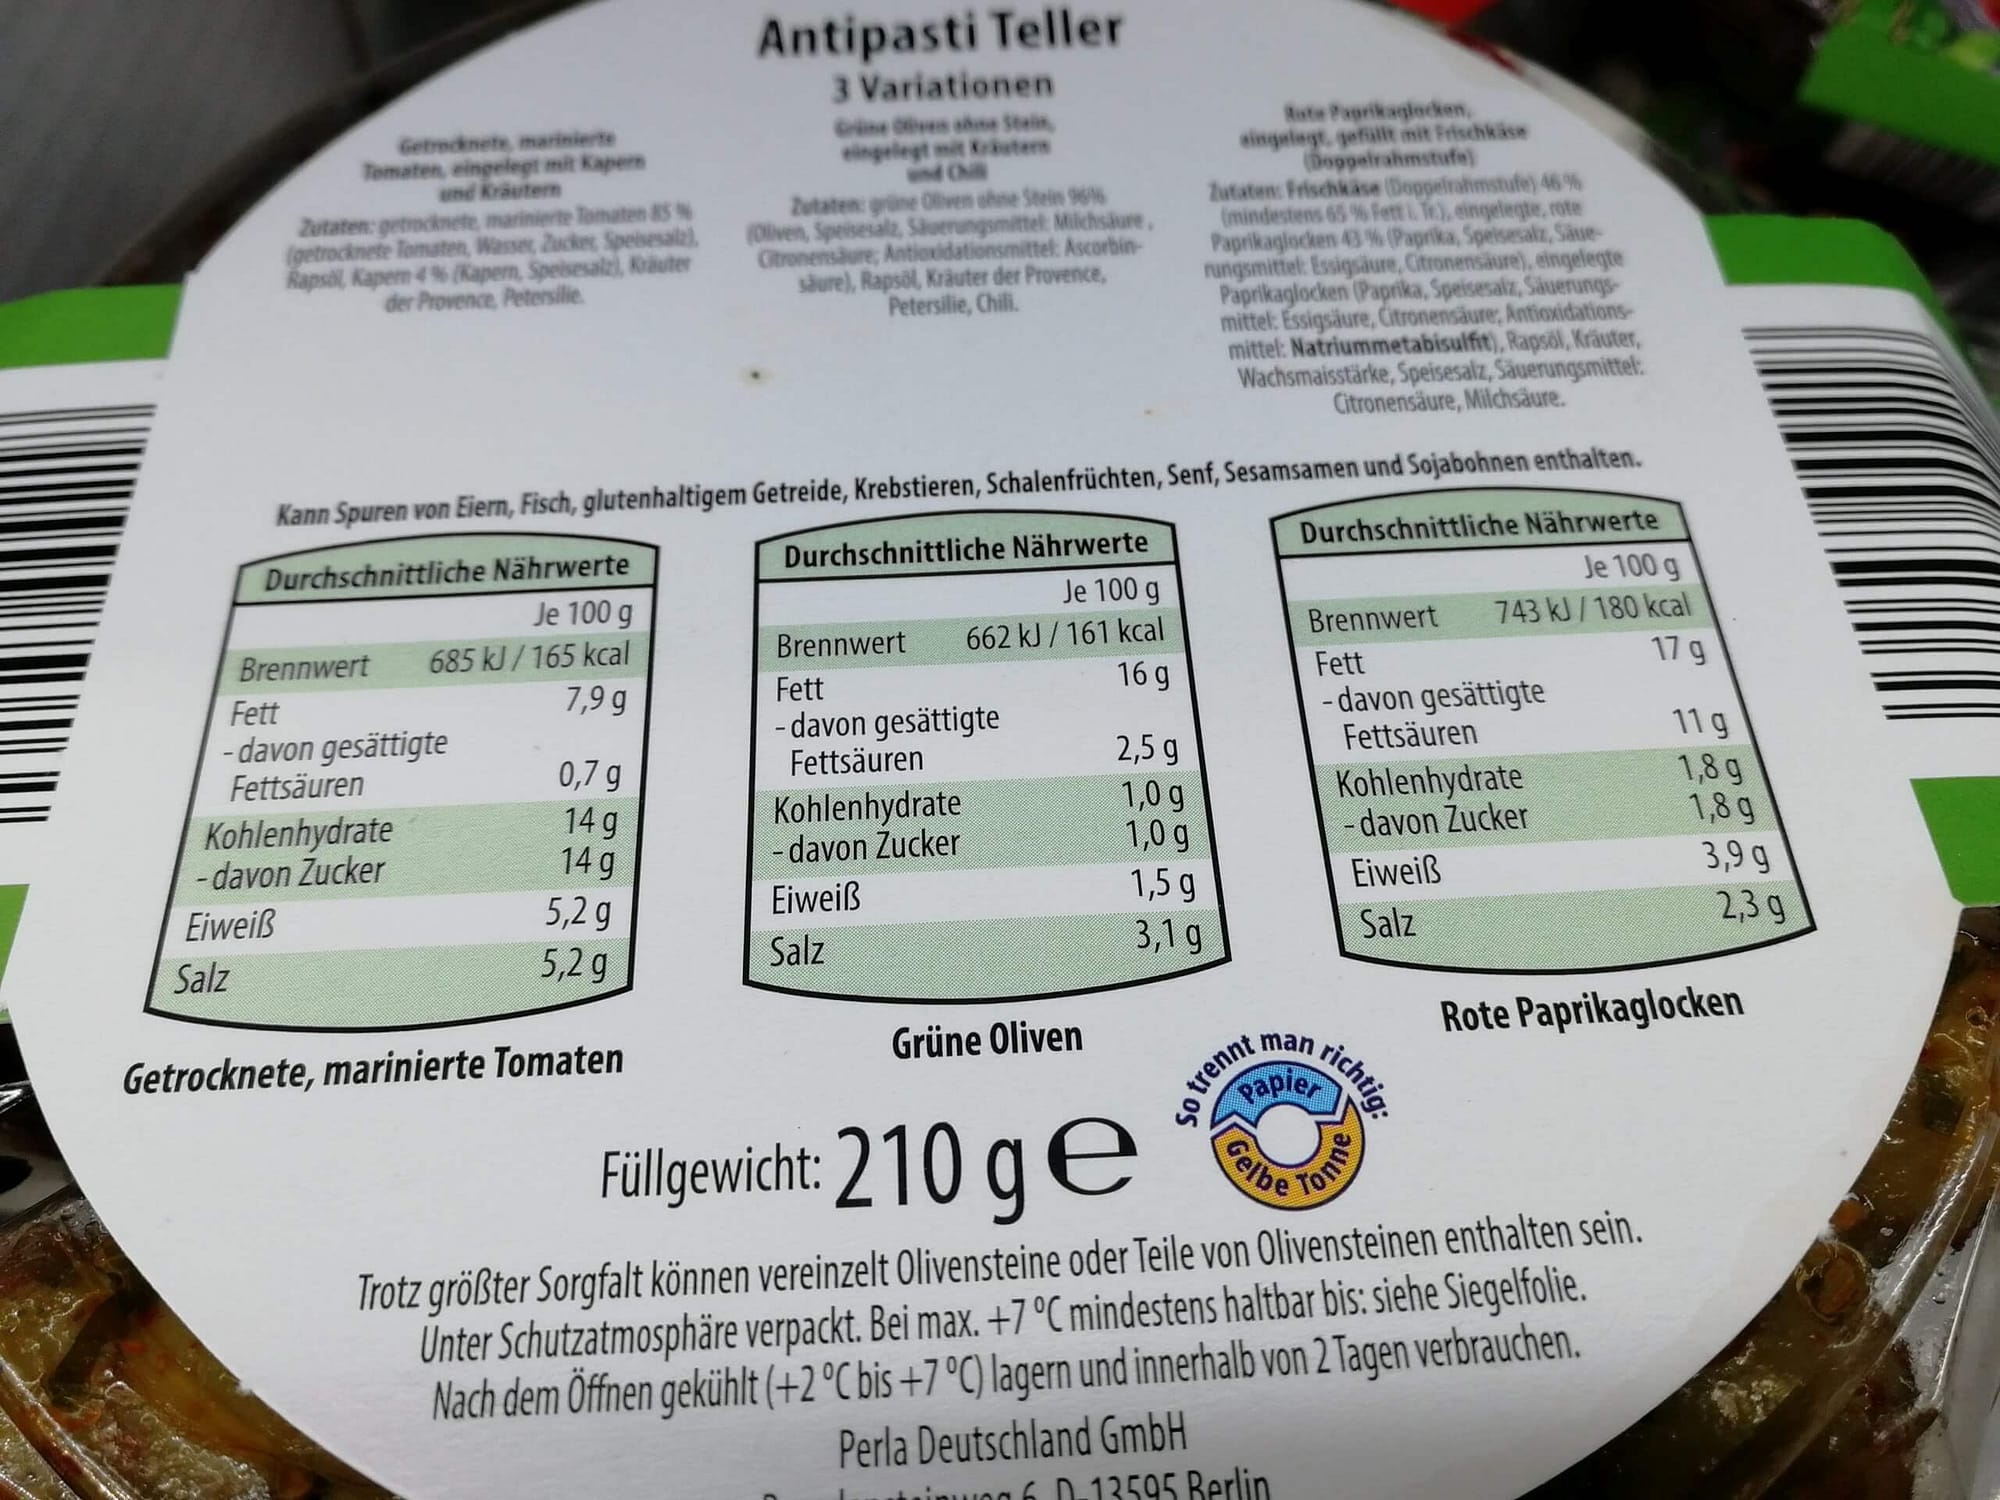 Keto-Snack-Aldi-Antipasti-Teller-Nährwerte